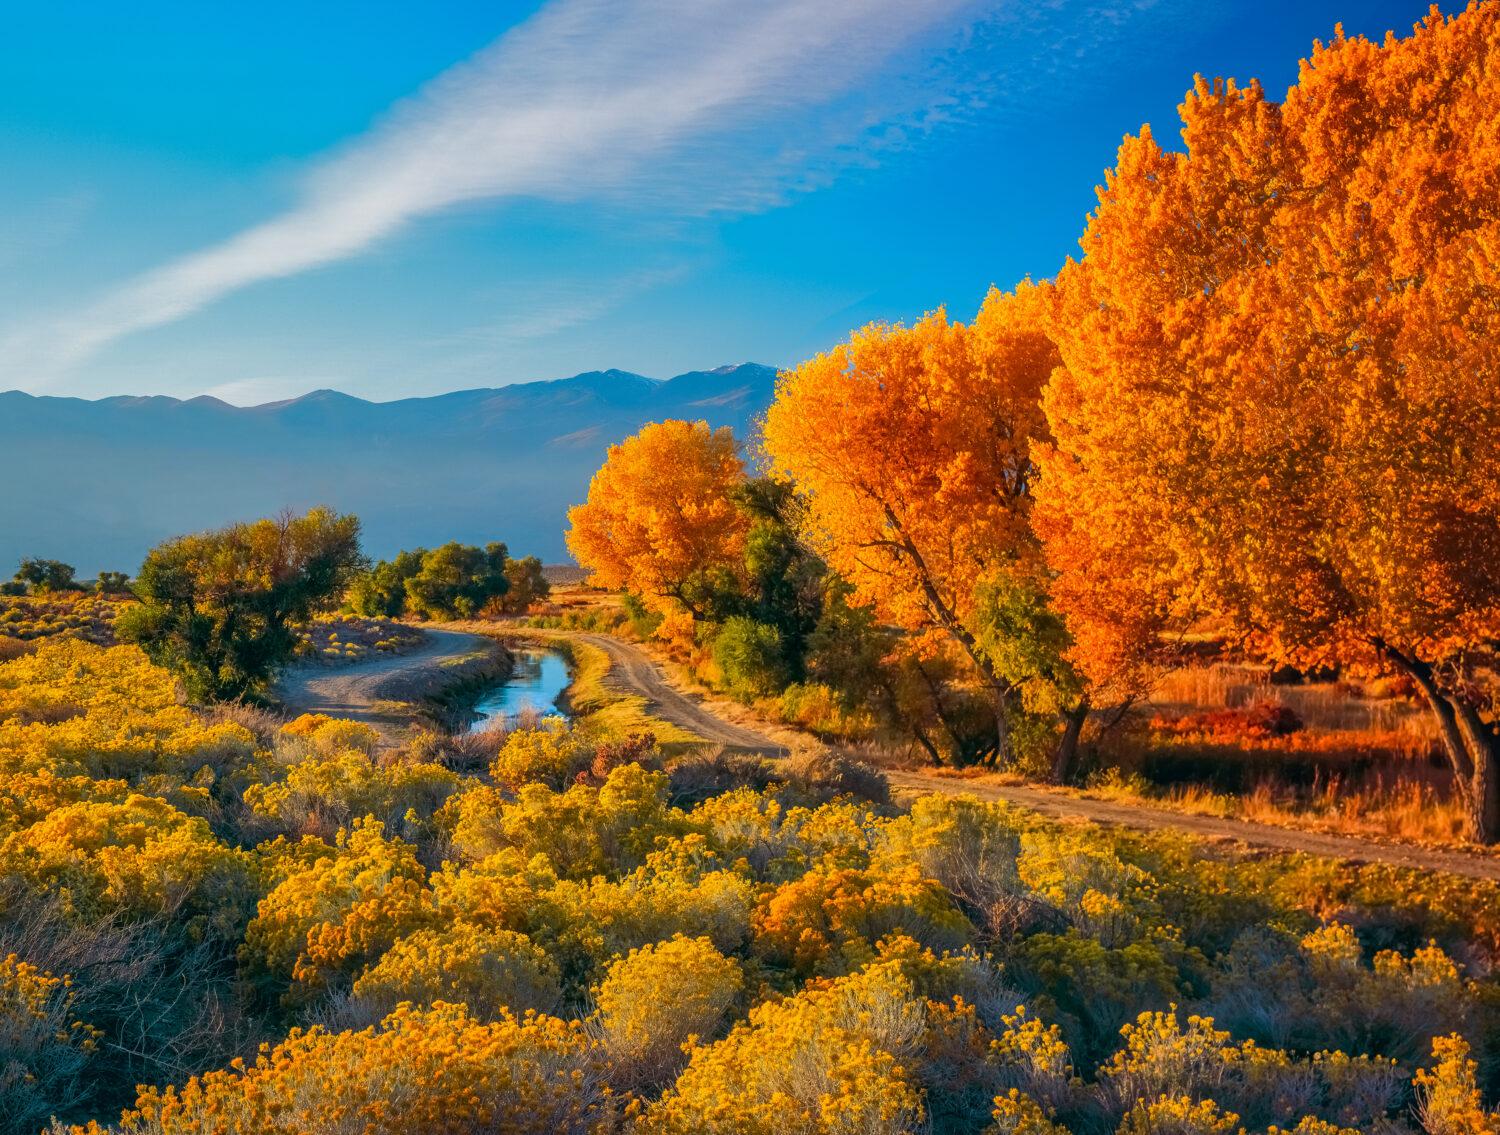 Il Cottonwood autunnale (Fremont Cottonwood) e il Rabbit Bush, o Rabbit Brush, crescono insieme nella valle del fiume Owens, vicino a Bishop, California, USA, con le montagne della Sierra Nevada sullo sfondo.